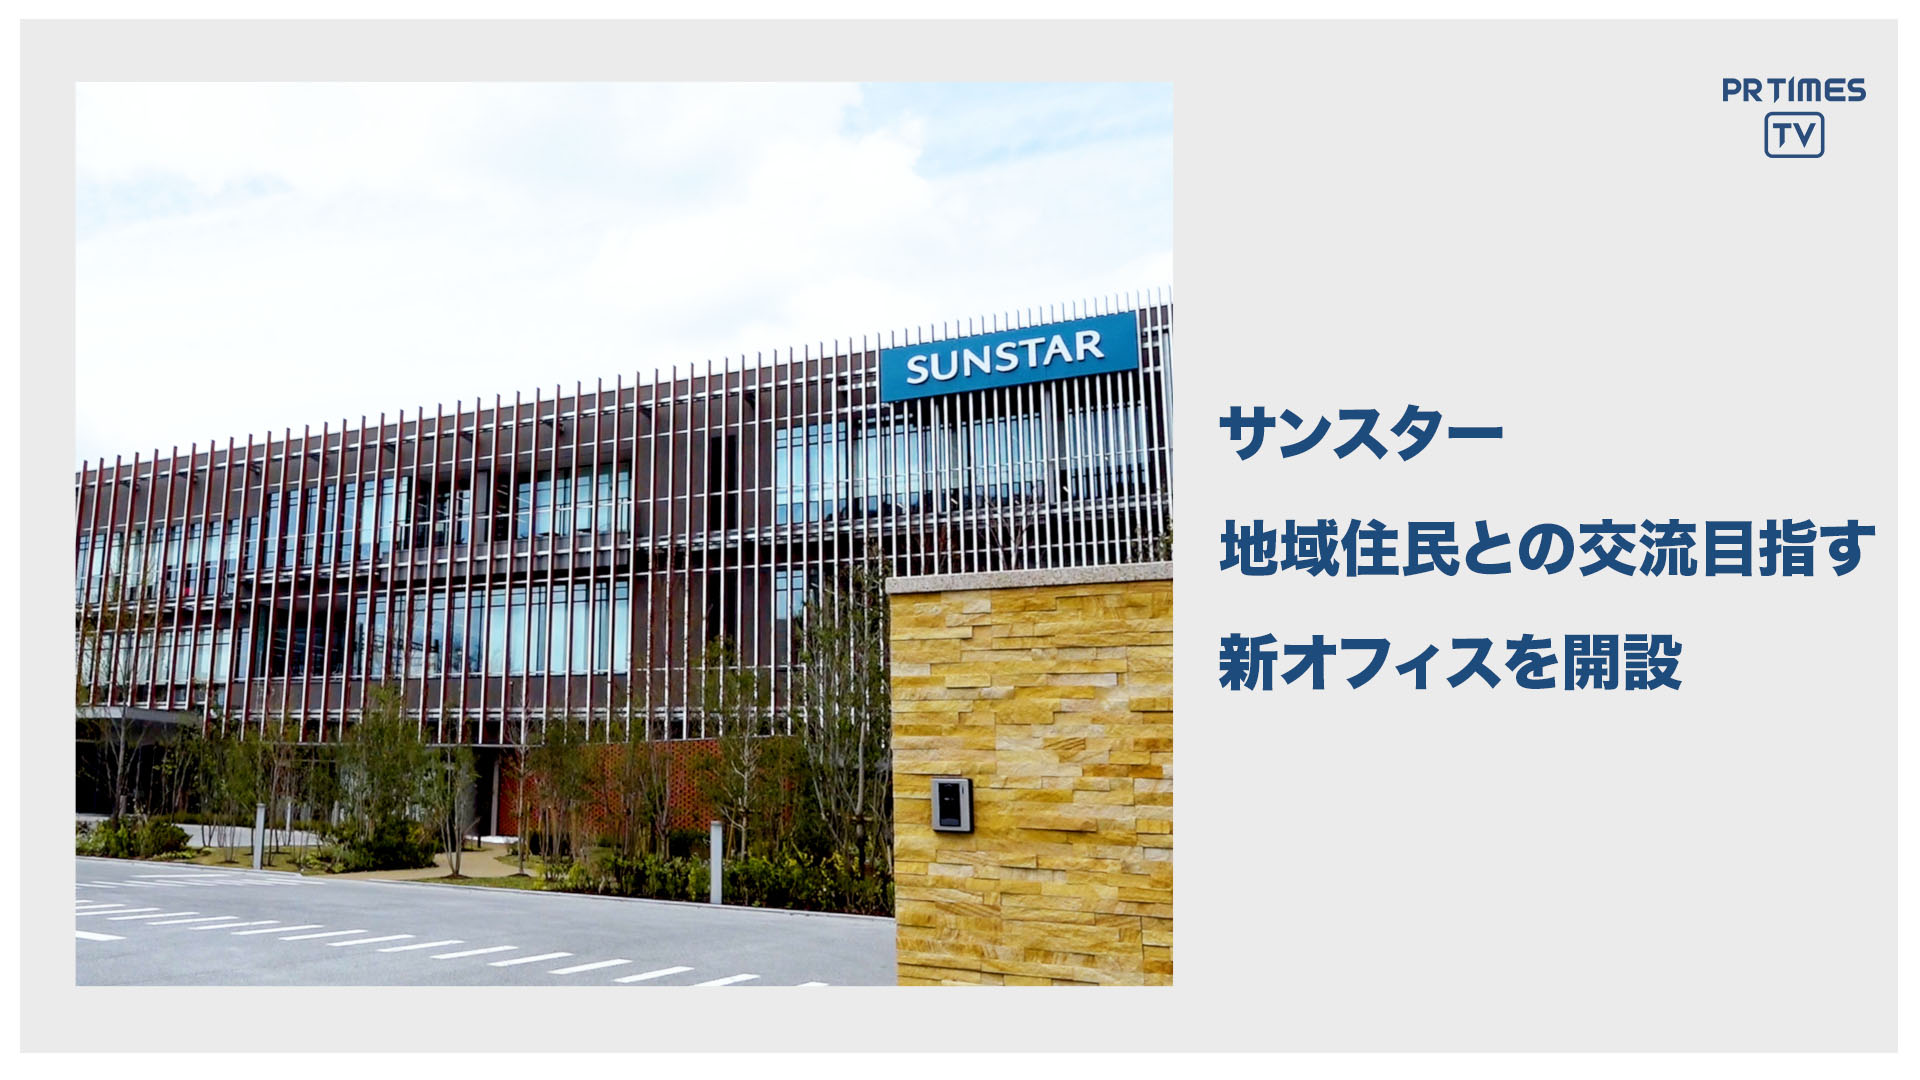 サンスター、新オフィス「サンスターコミュニケーションパーク」を大阪府高槻市に開設